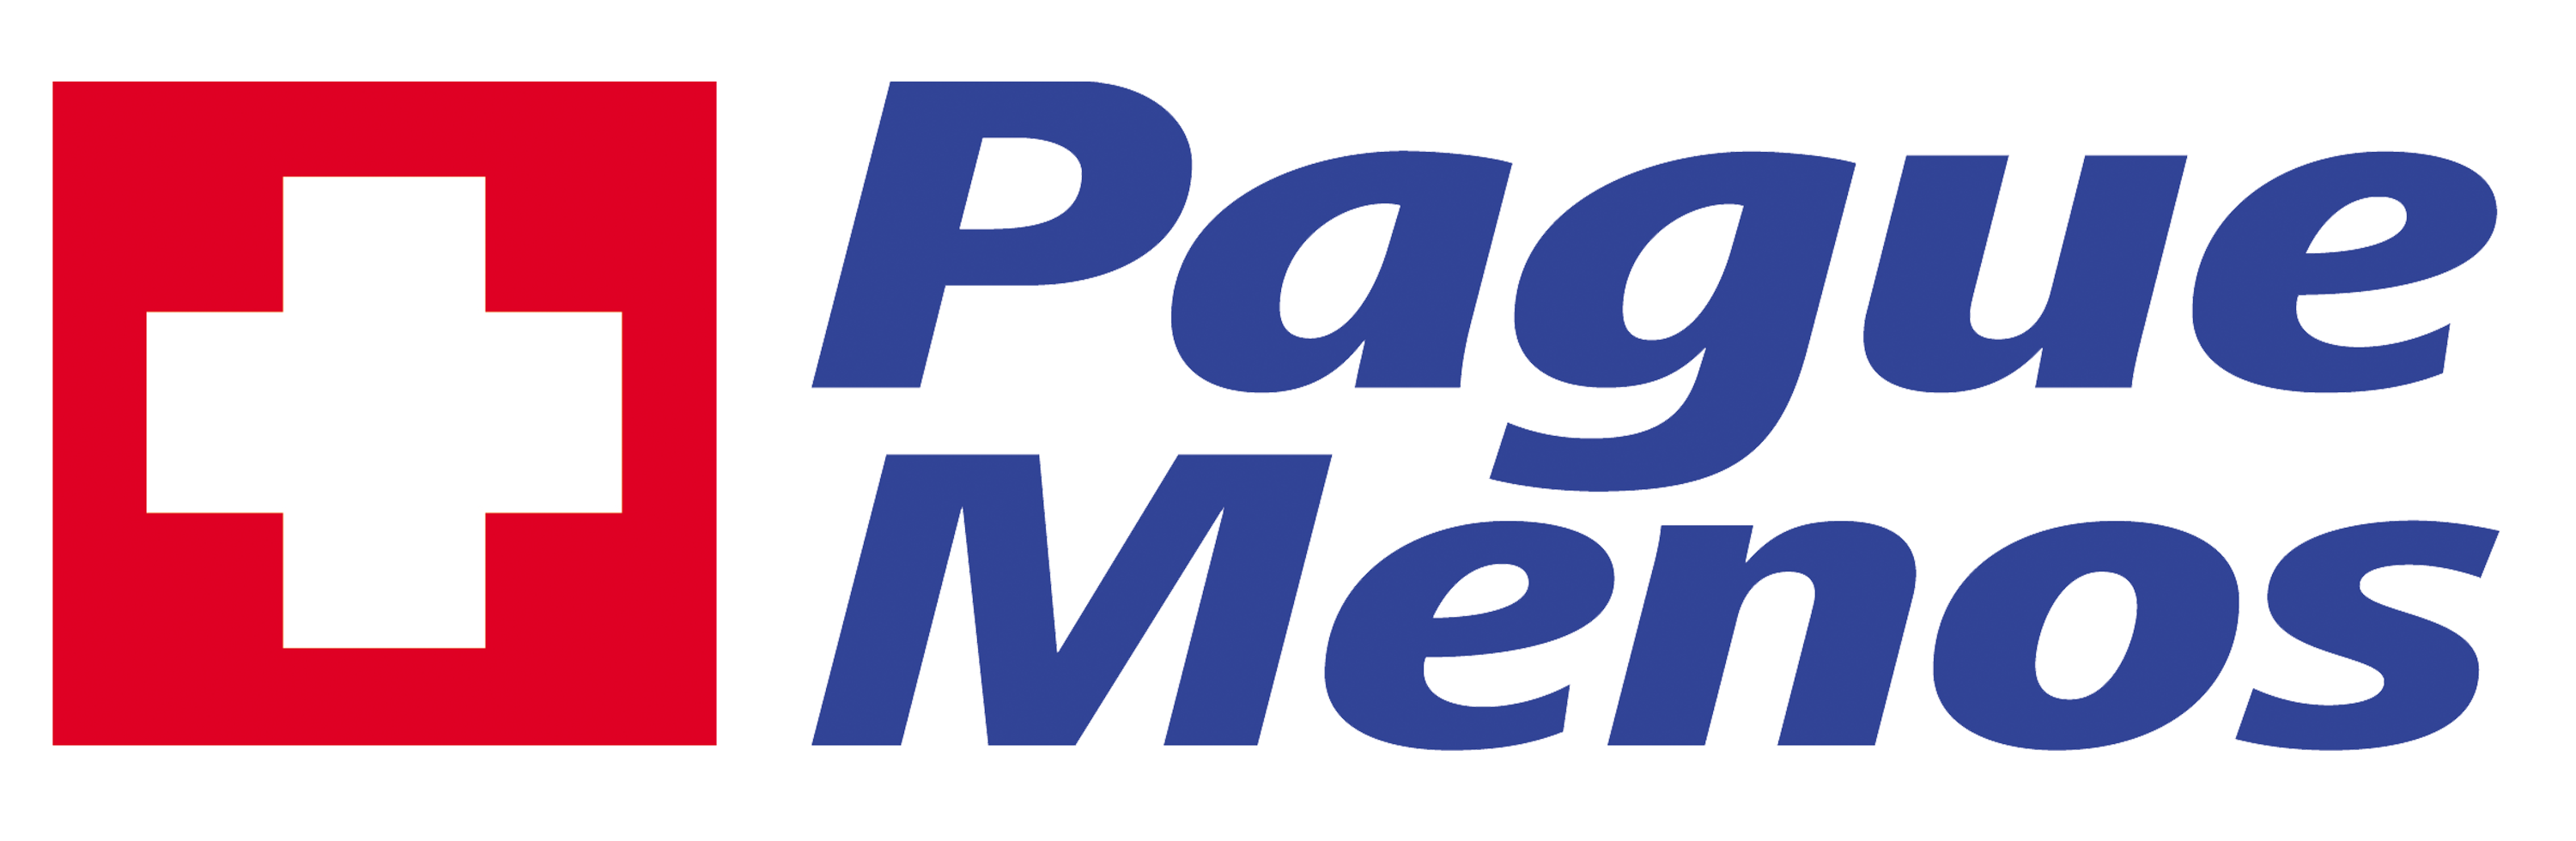 Farmacia Pague Menos - Ponta d´Areia - MA